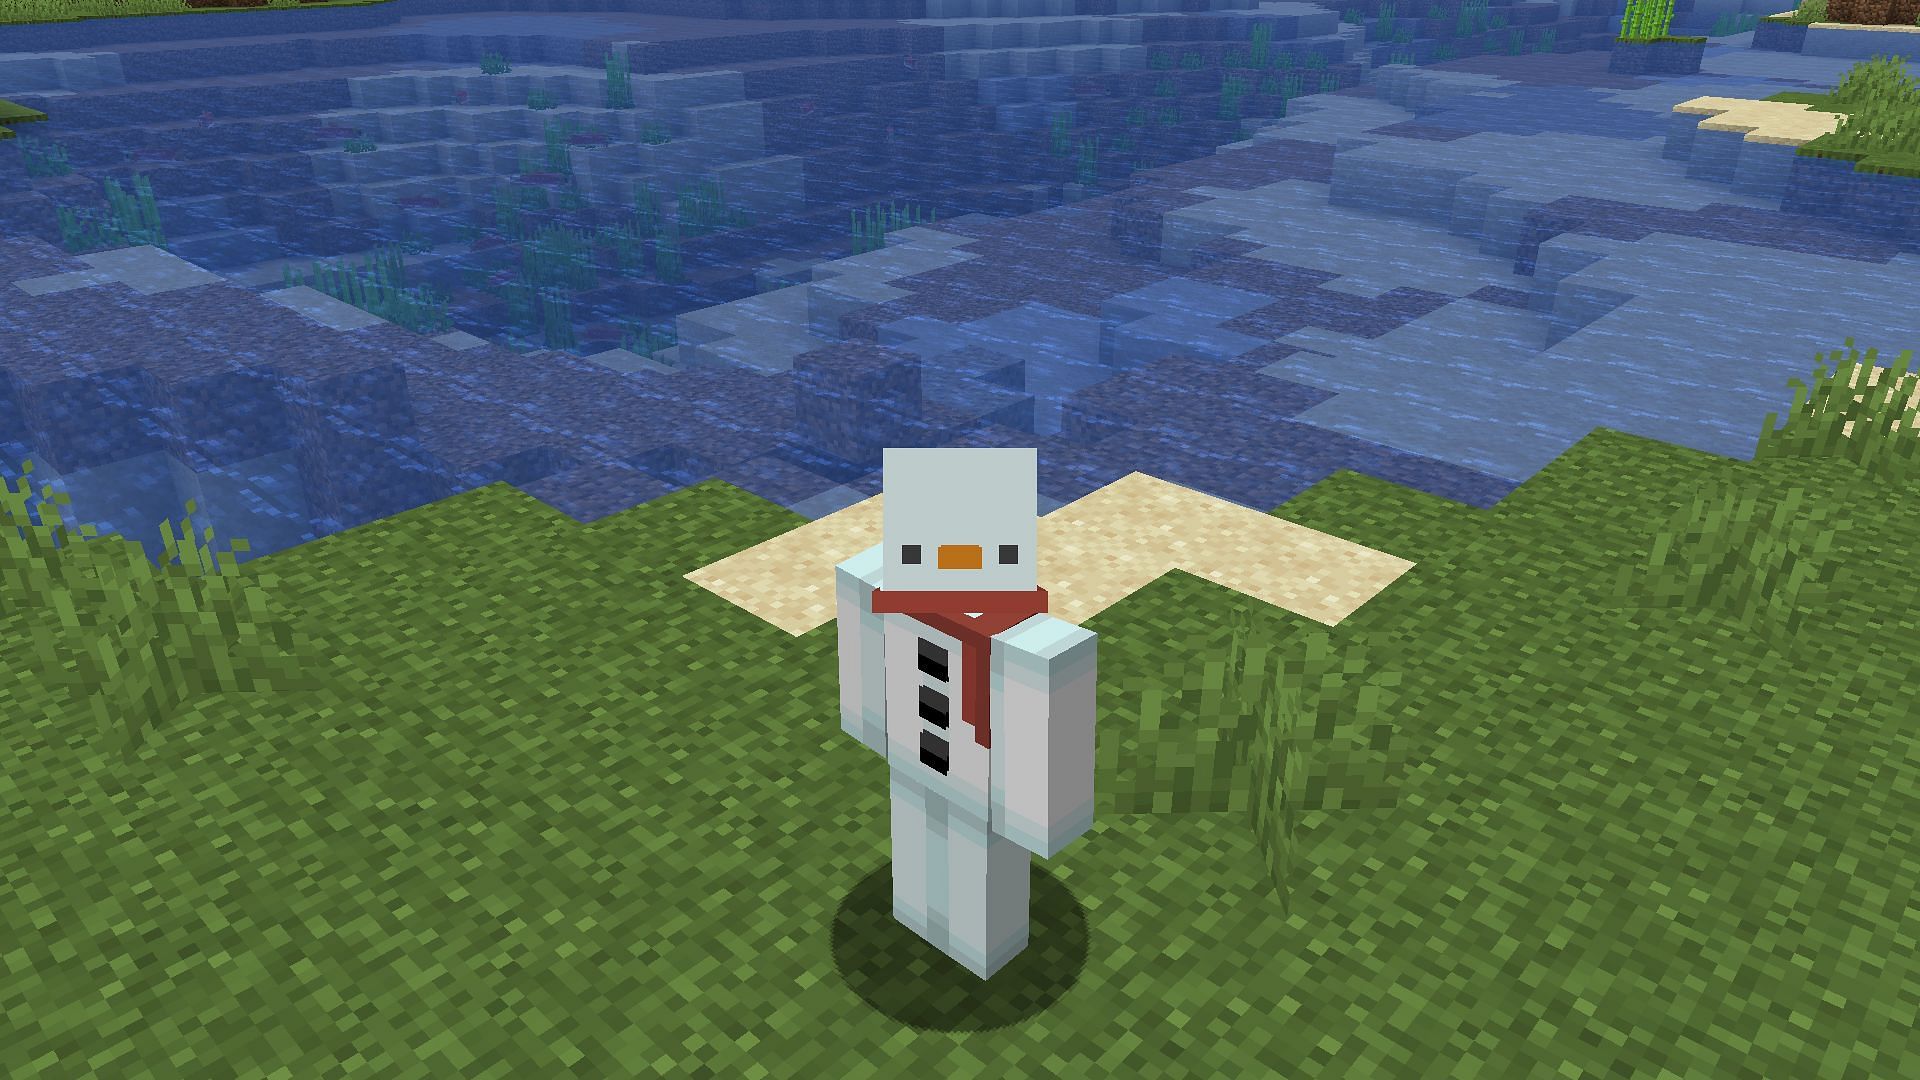 Игроки могут стать снеговиками, применив этот скин в Minecraft (Изображение взято с Mojang)